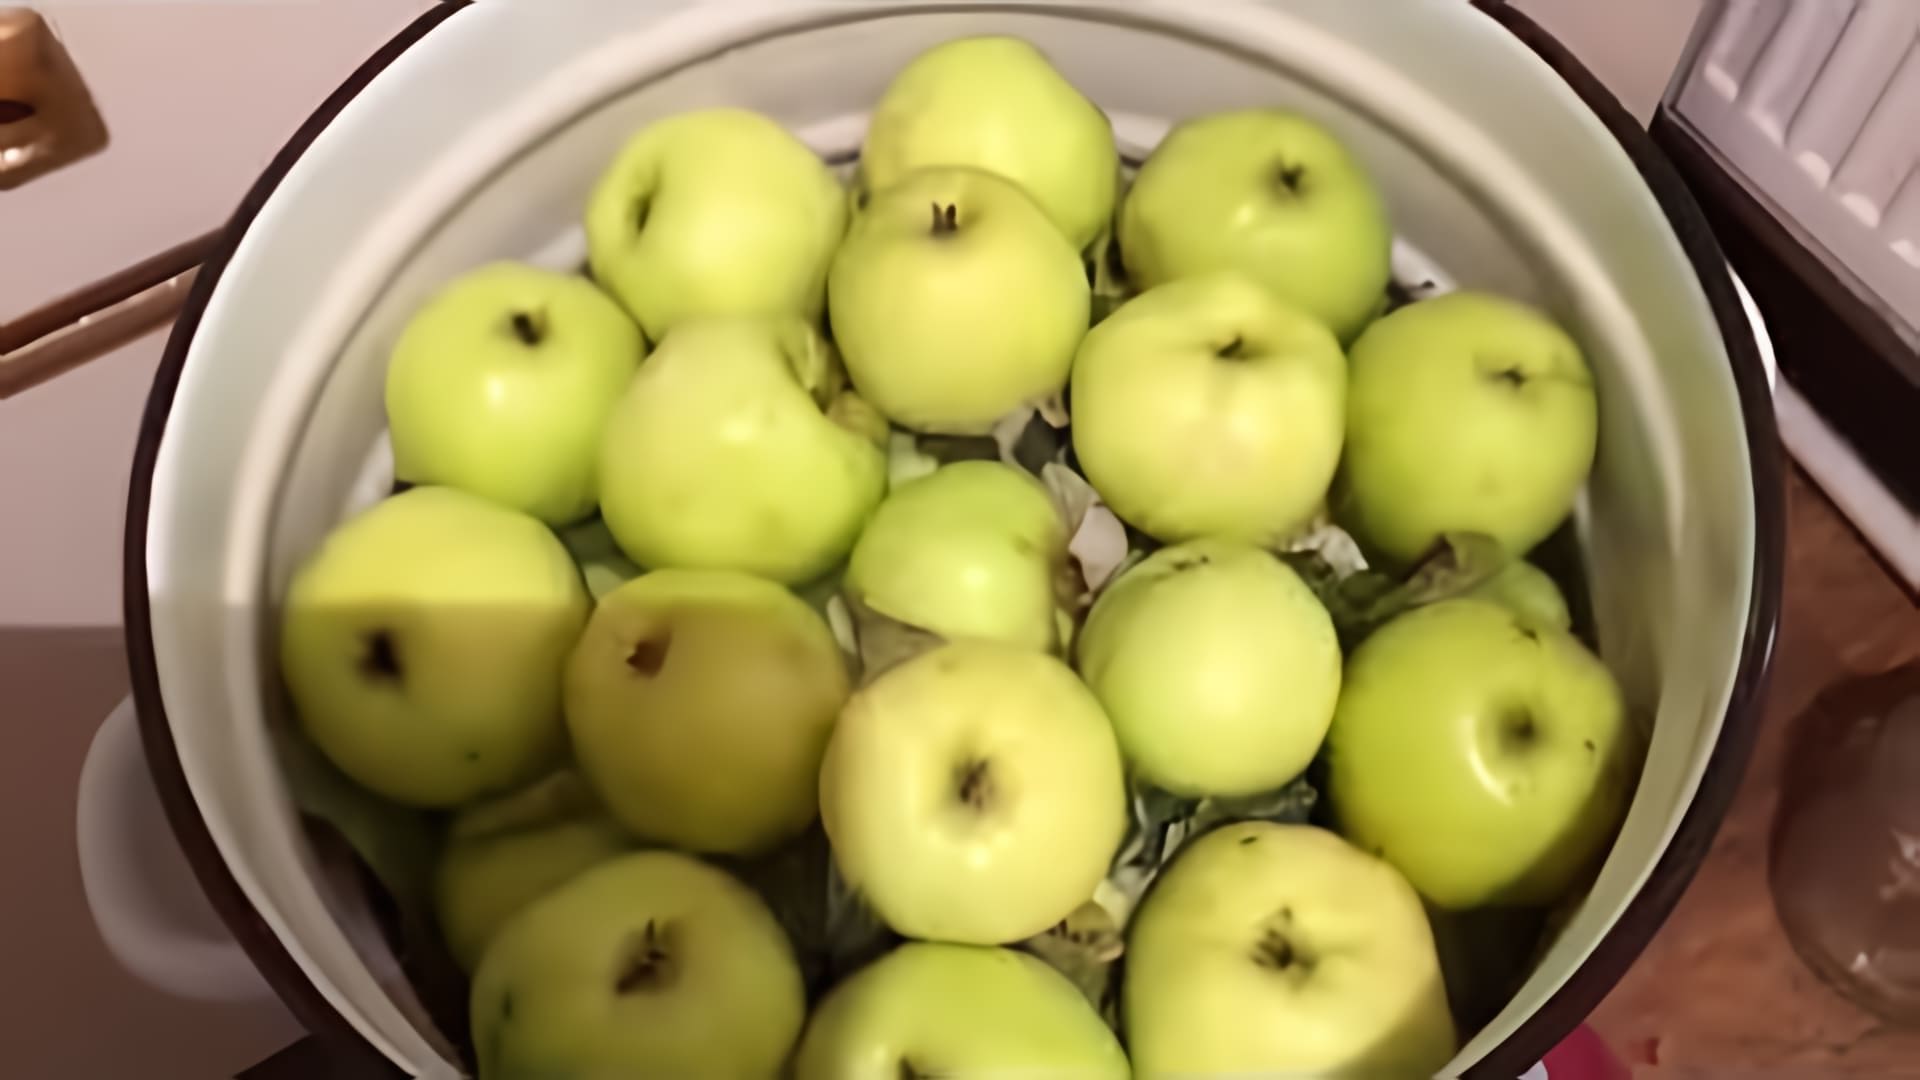 Яблоки моченые - это необыкновенный рецепт, который можно приготовить в домашних условиях